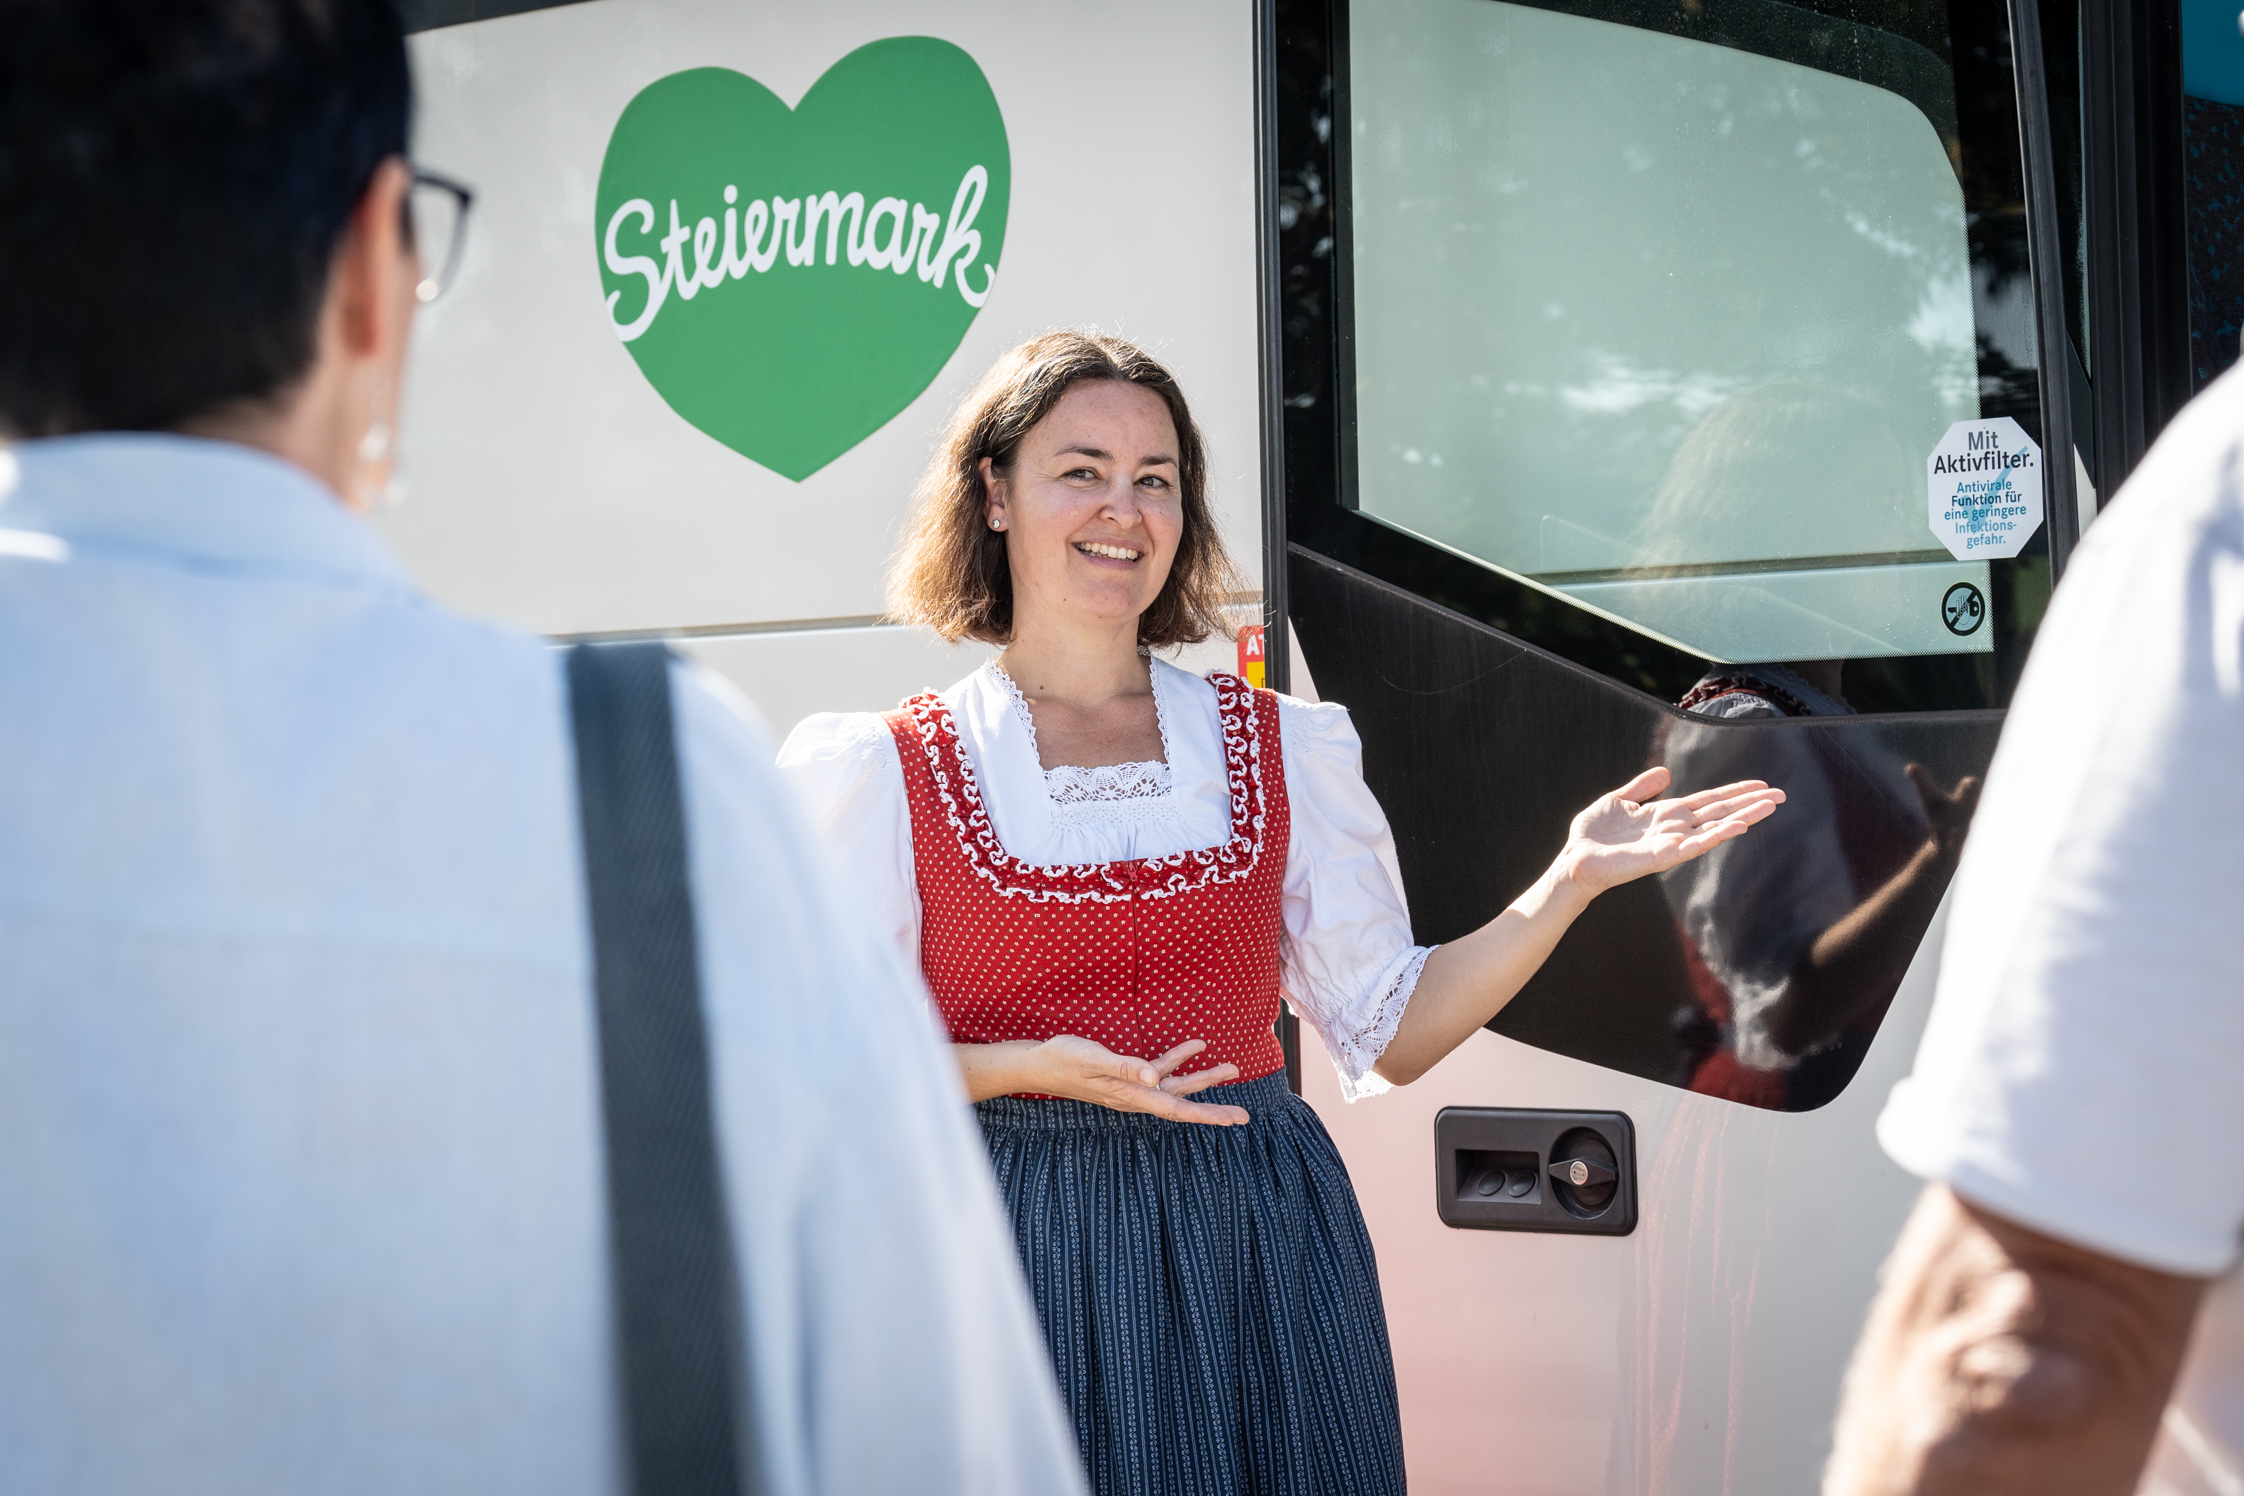 Bitte einsteigen zur Gruppenreise in die Steiermark (c)Busreisen Steiermark, Jesse Streibl